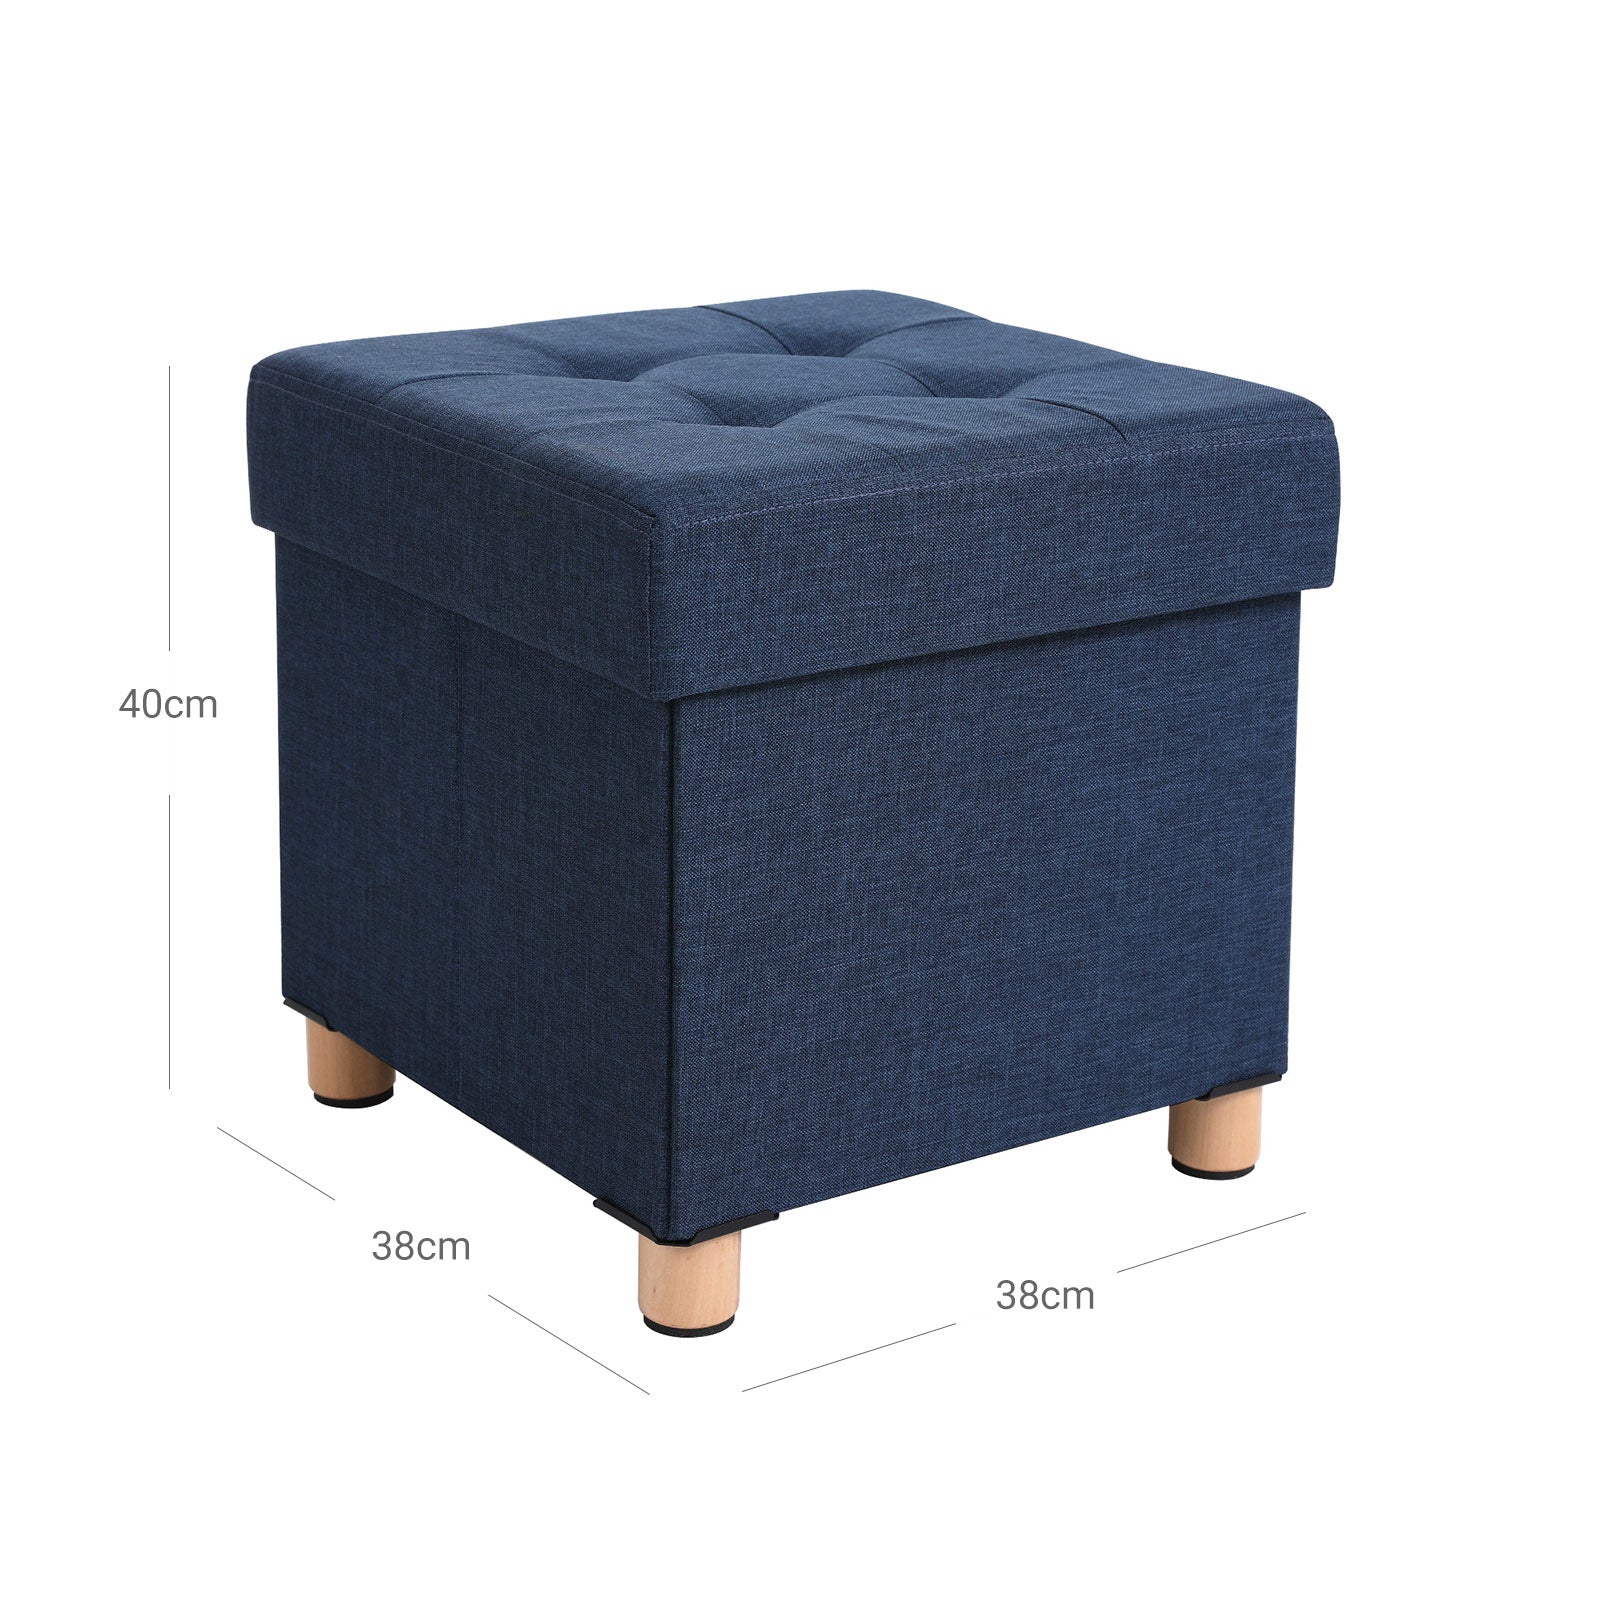 Sitzhocker 38 x 38 x 40 cm bis 300 kg belastbar Marineblau